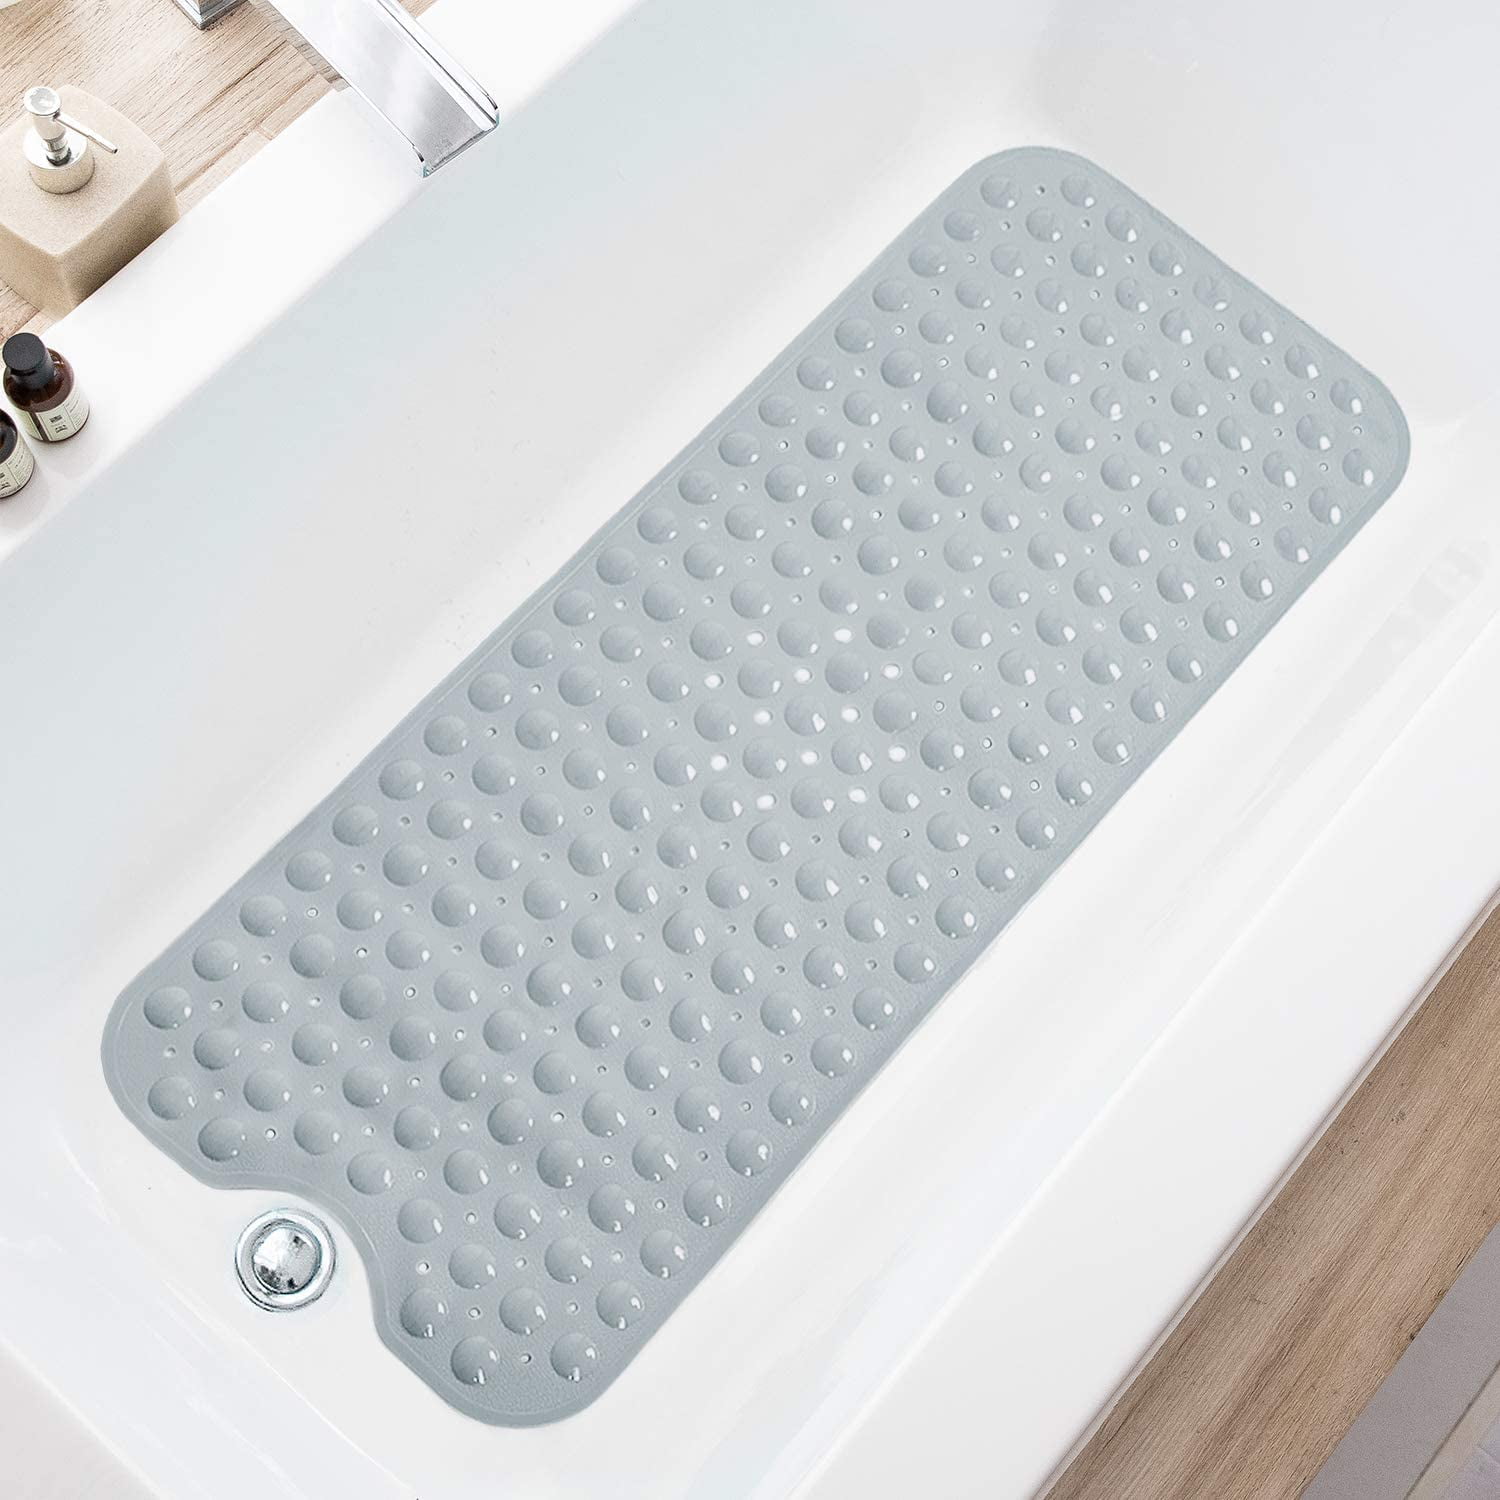 Meetbaar visie levend Shower Mat , Bath Mat for Tub, 39.4 x 15.8 Inch Bath Mats for Bathroom & Bathtub  Mat Non Slip, Superior Grip&Drainage - Walmart.com